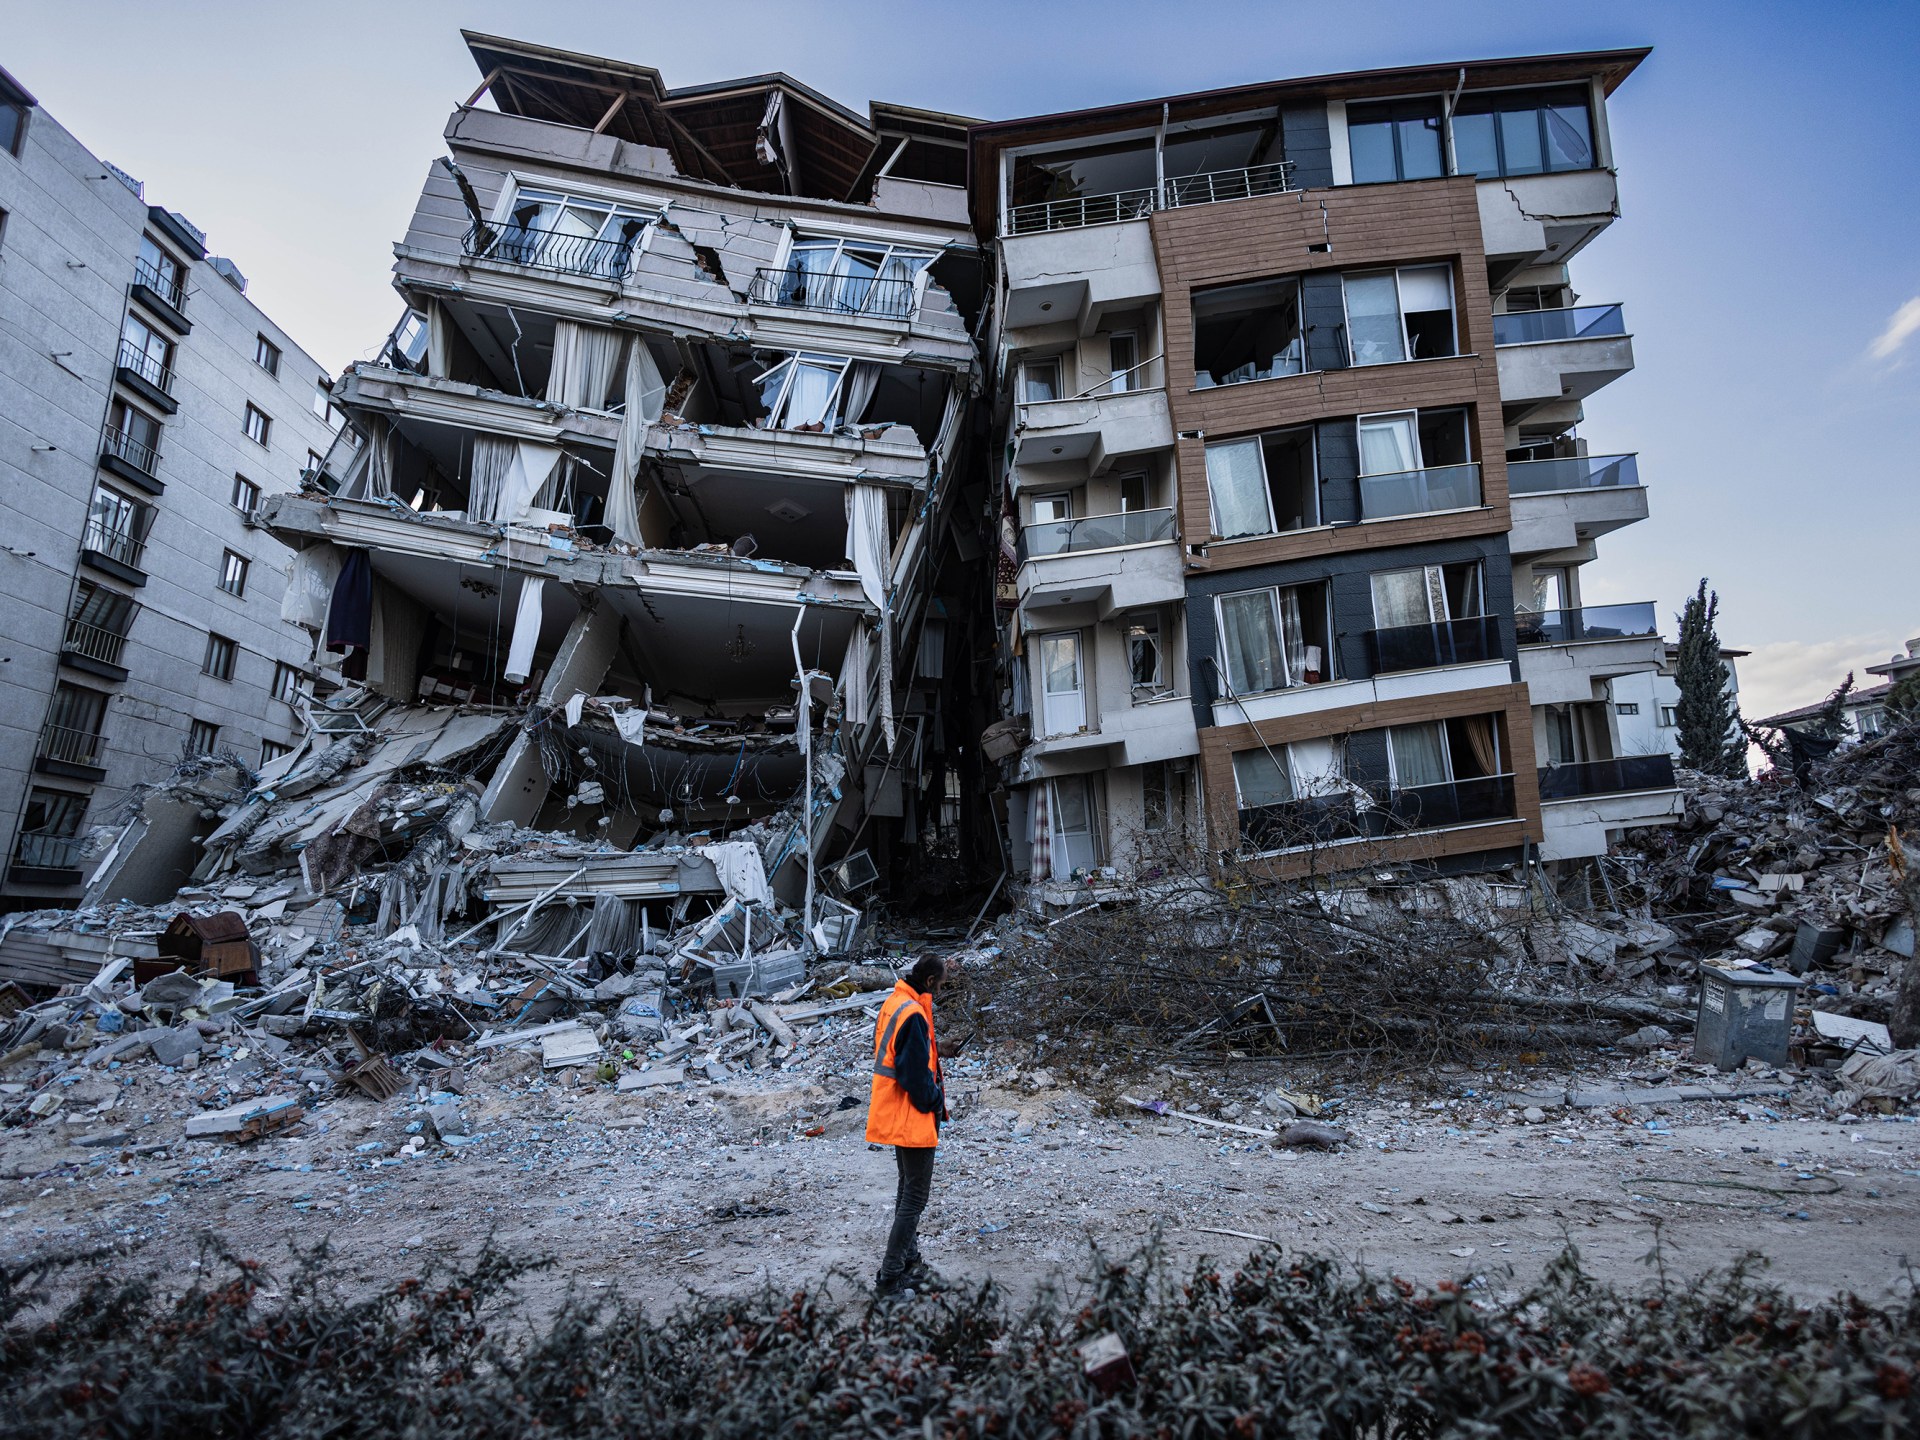 Birleşmiş Milletler depremin Türkiye’de yarattığı hasarın 100 milyar doları aşacağını söylüyor Depremin Türkiye ve Suriye haberleri